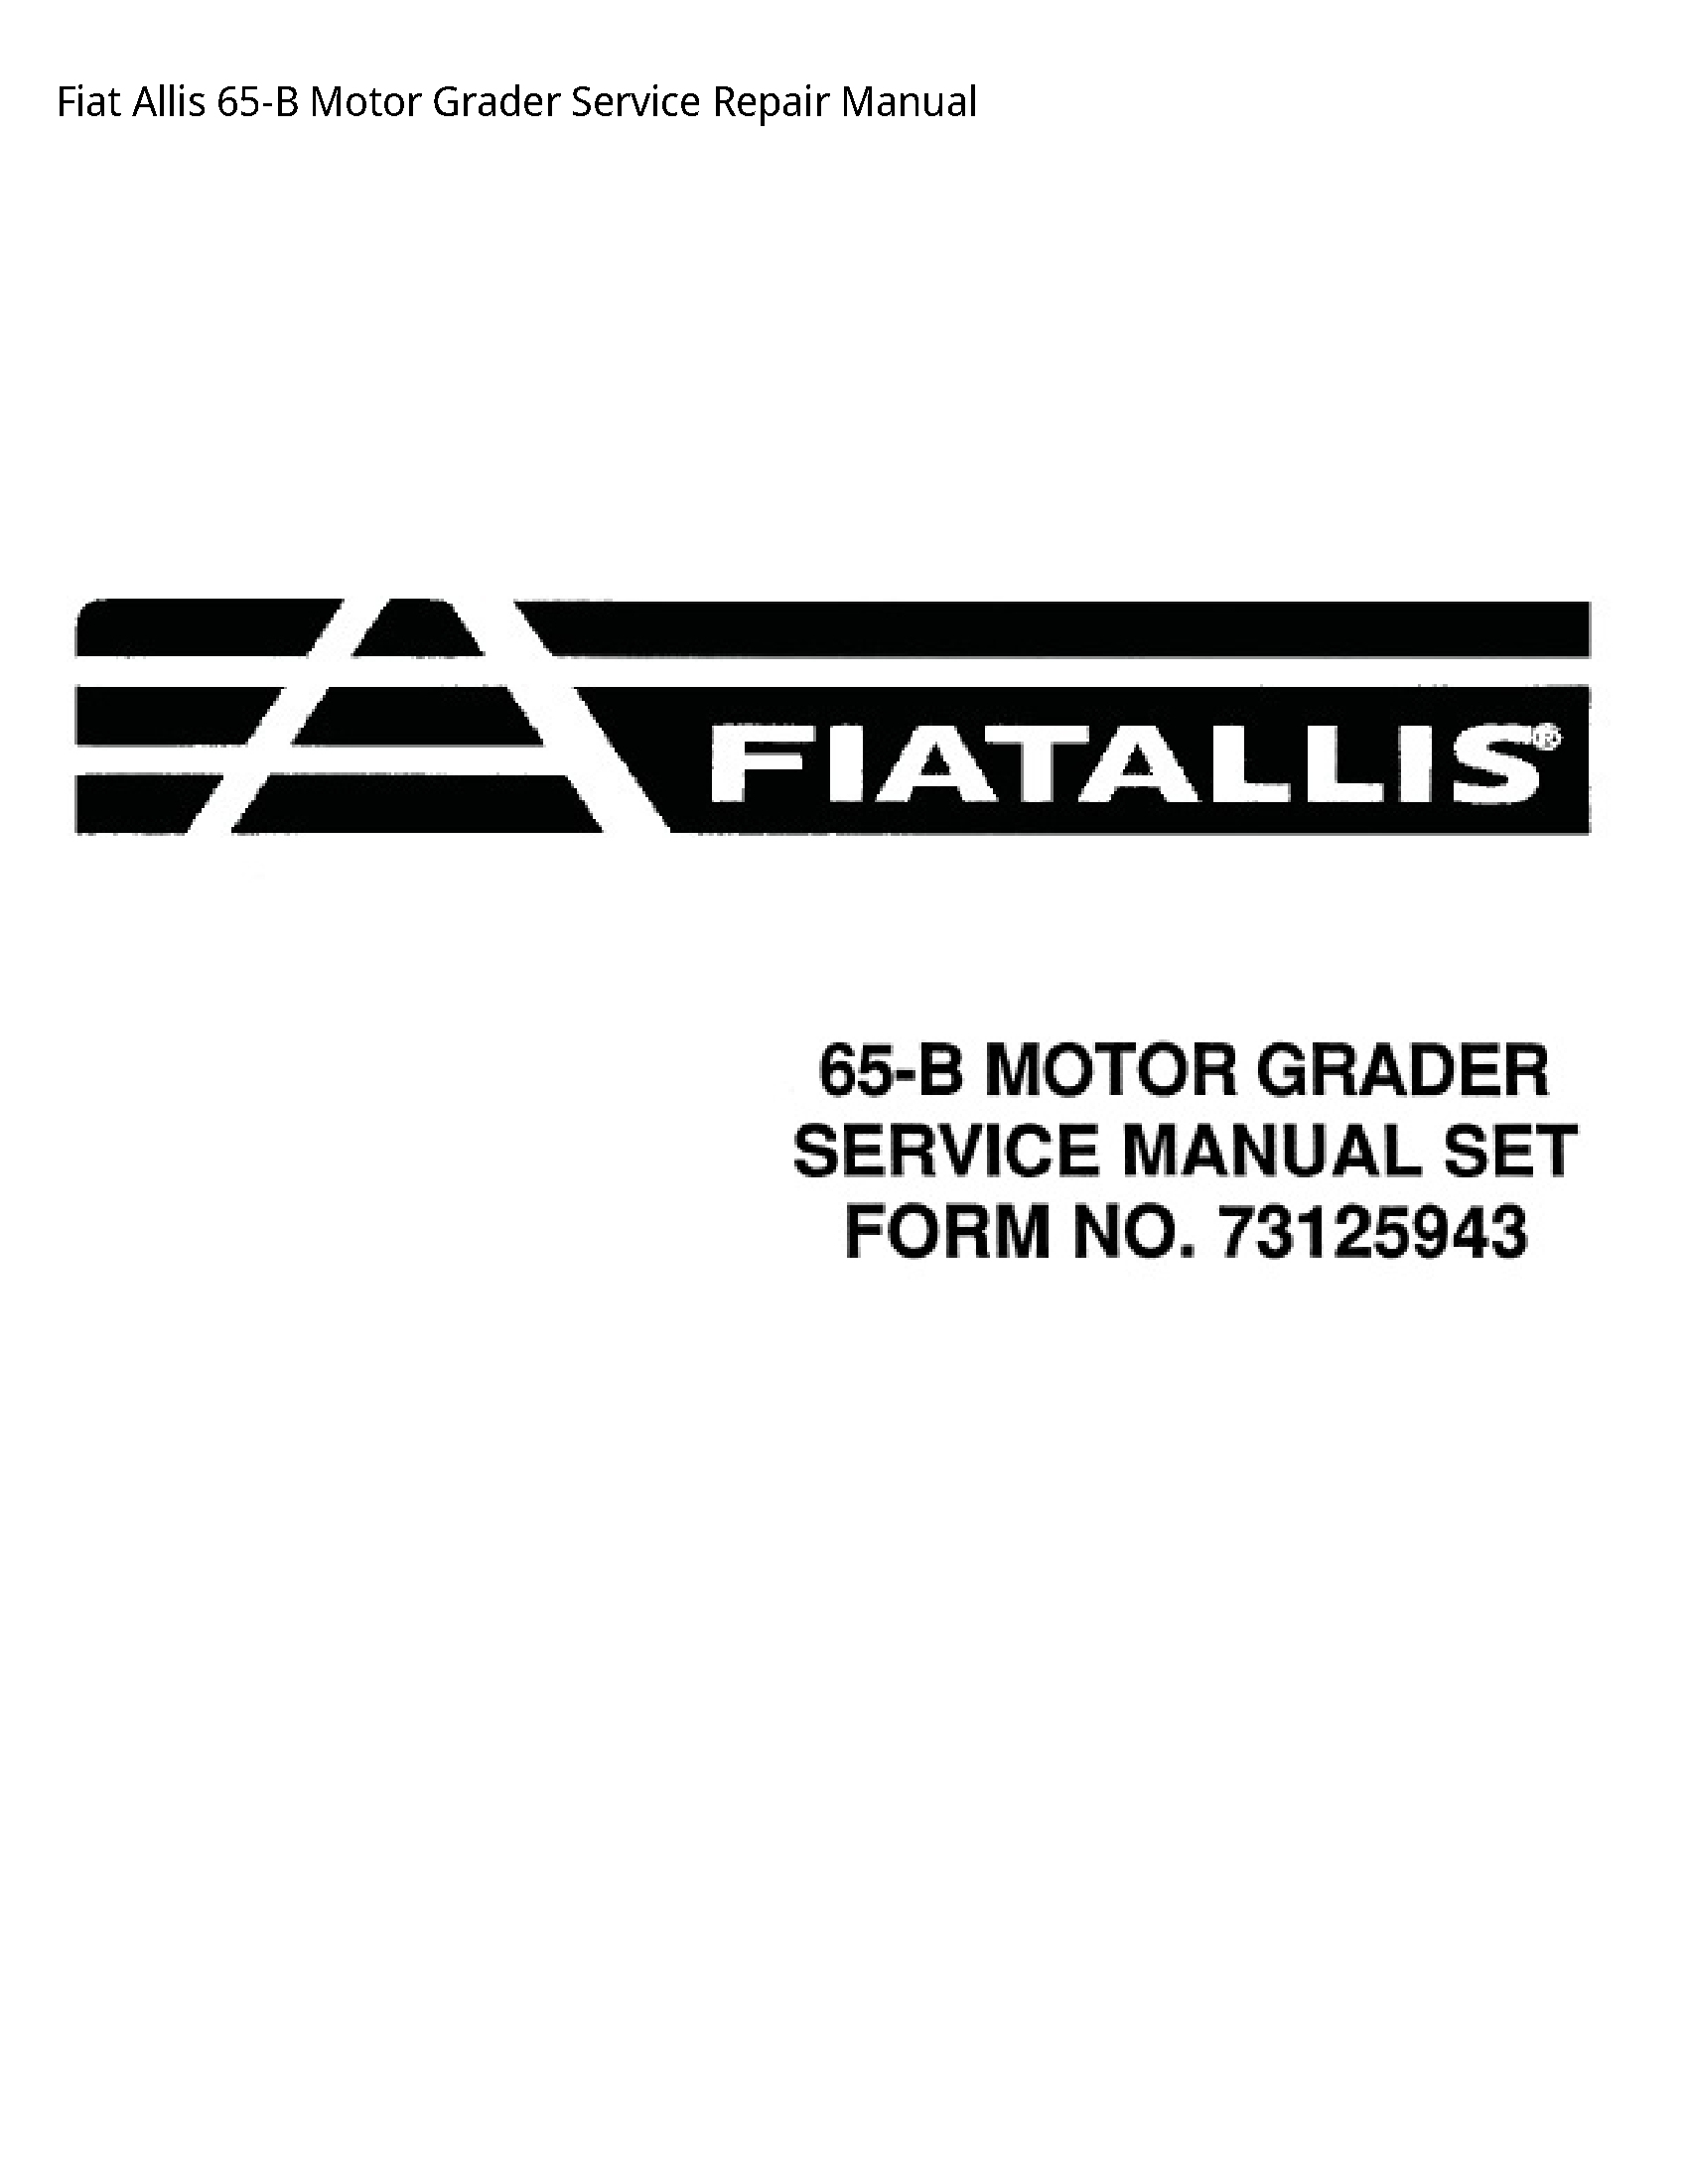 Fiat Allis 65-B Motor Grader manual